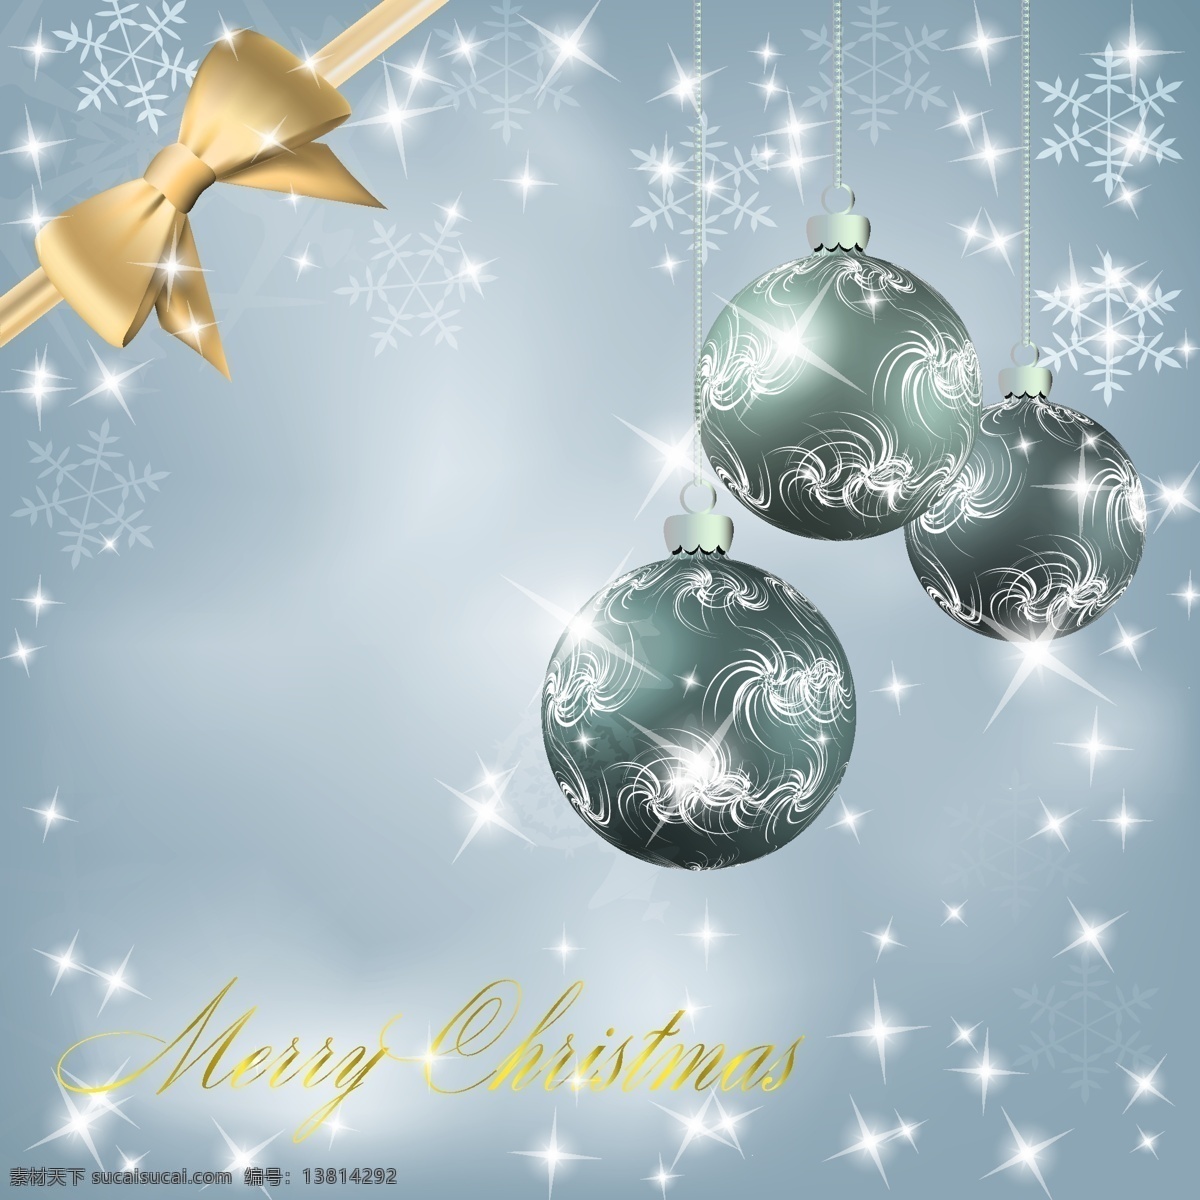 典雅 圣诞 挂 球 背景 矢量 彩球 典雅背景 蝴蝶结 银色圣诞 节日素材 其他节日